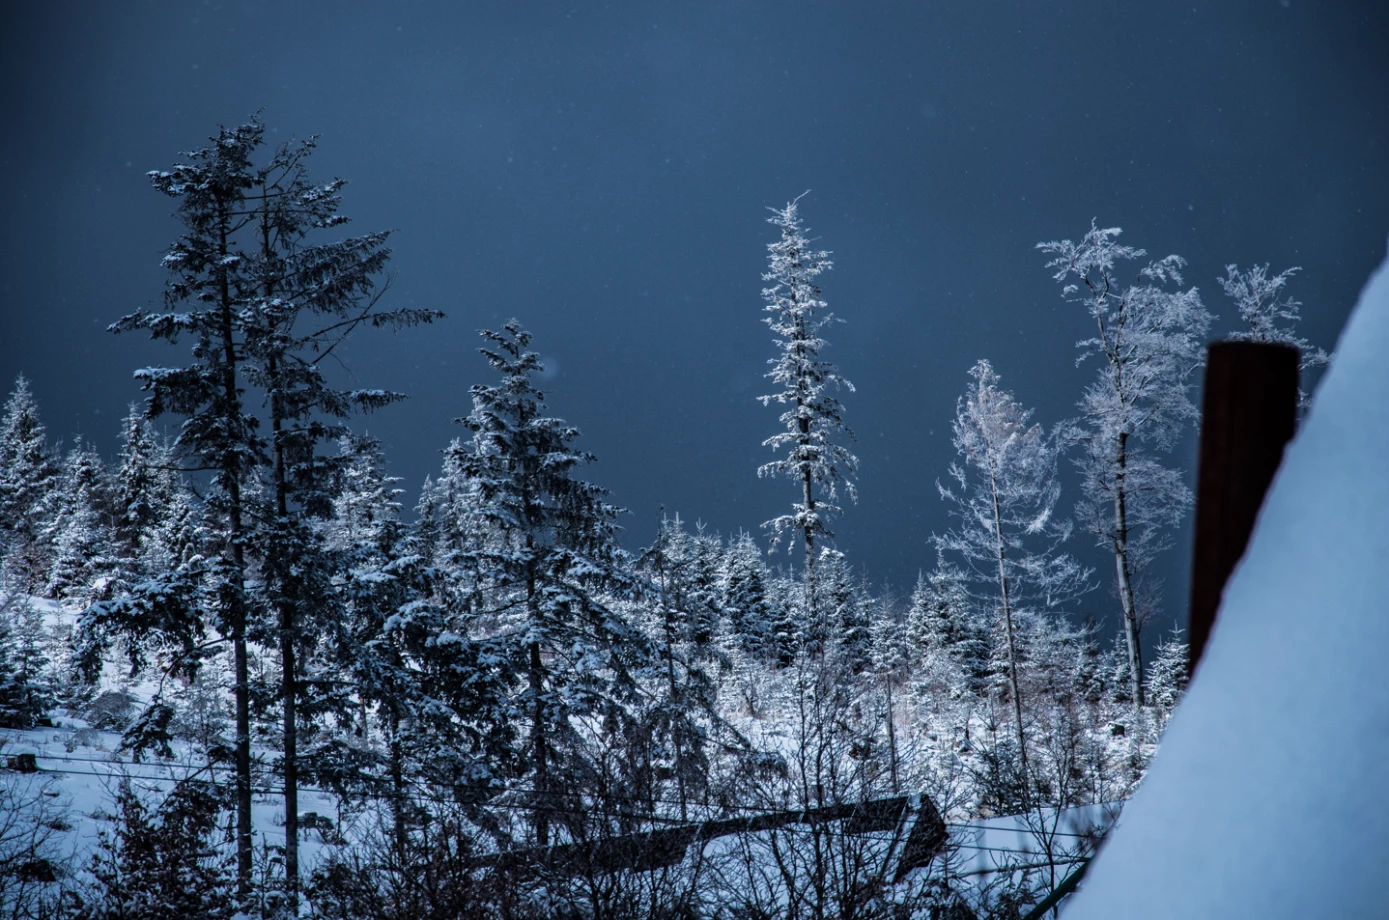 zdjęcia pulawy fotograf karolina-brzezinska portfolio zdjecia krajobrazu gory mazury